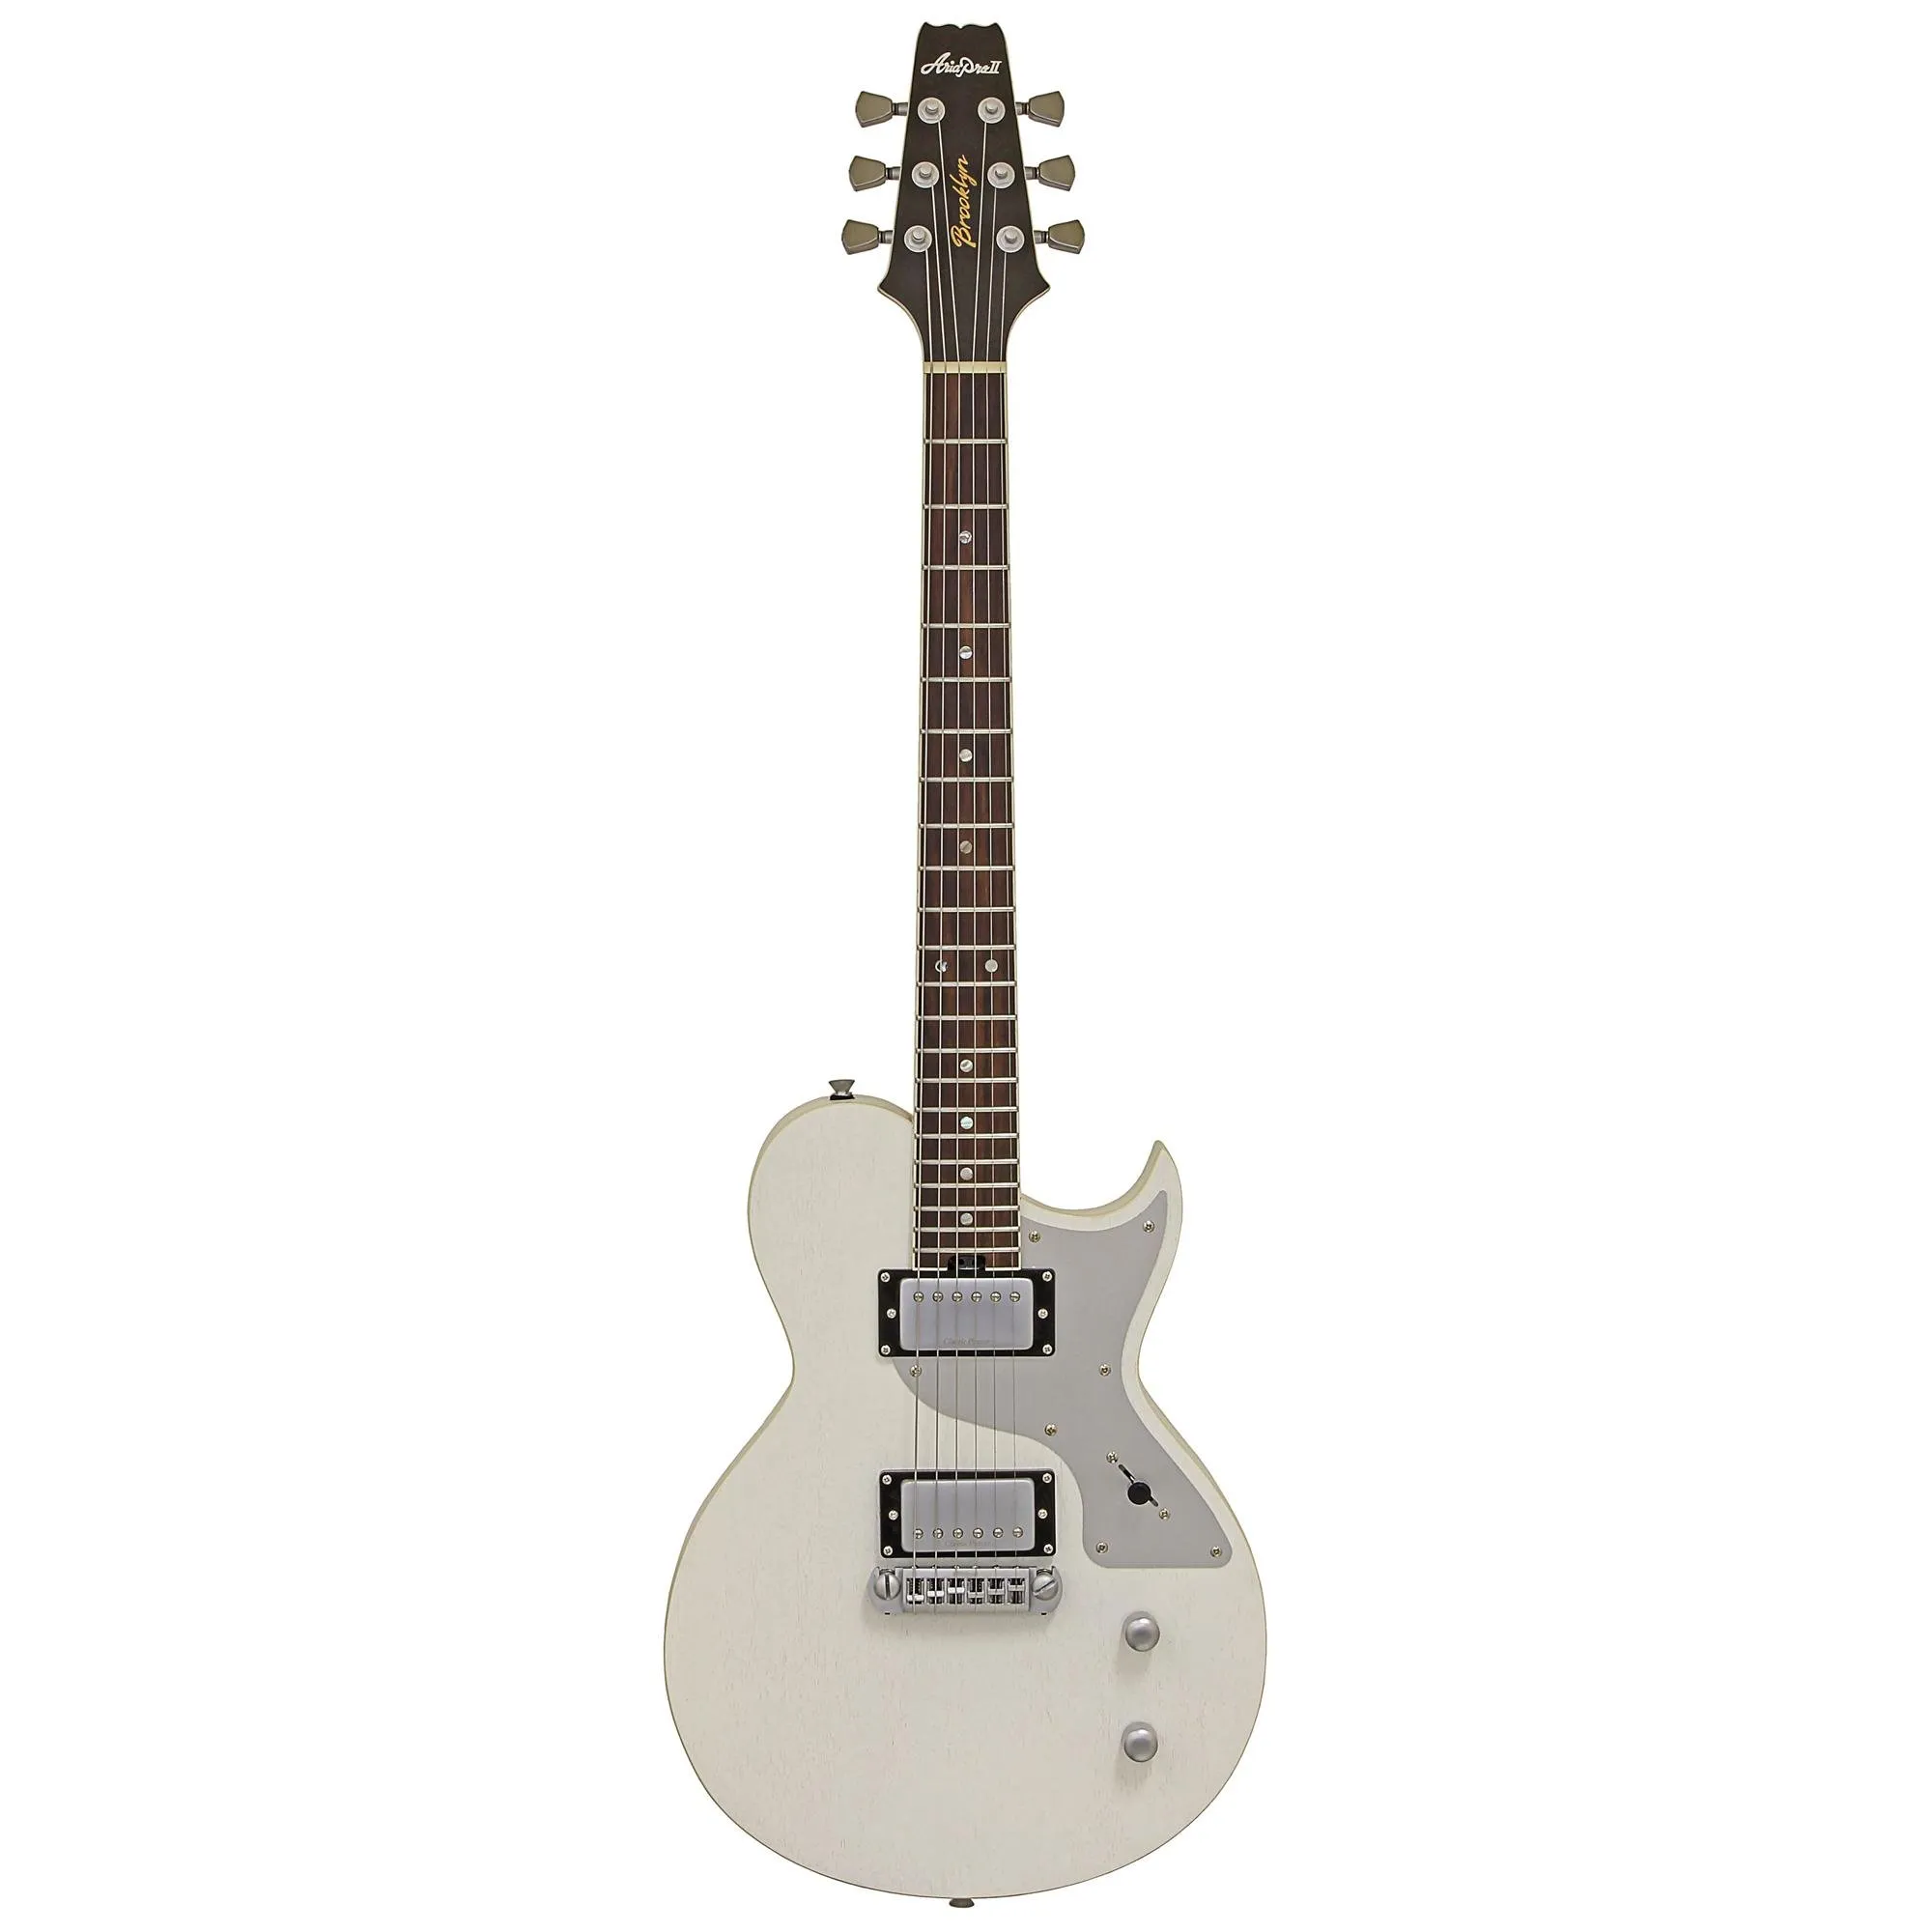 Guitarra Aria Pro II 718-MK2 Brooklyn Open Pore White por 3.333,00 à vista no boleto/pix ou parcele em até 12x sem juros. Compre na loja Mundomax!